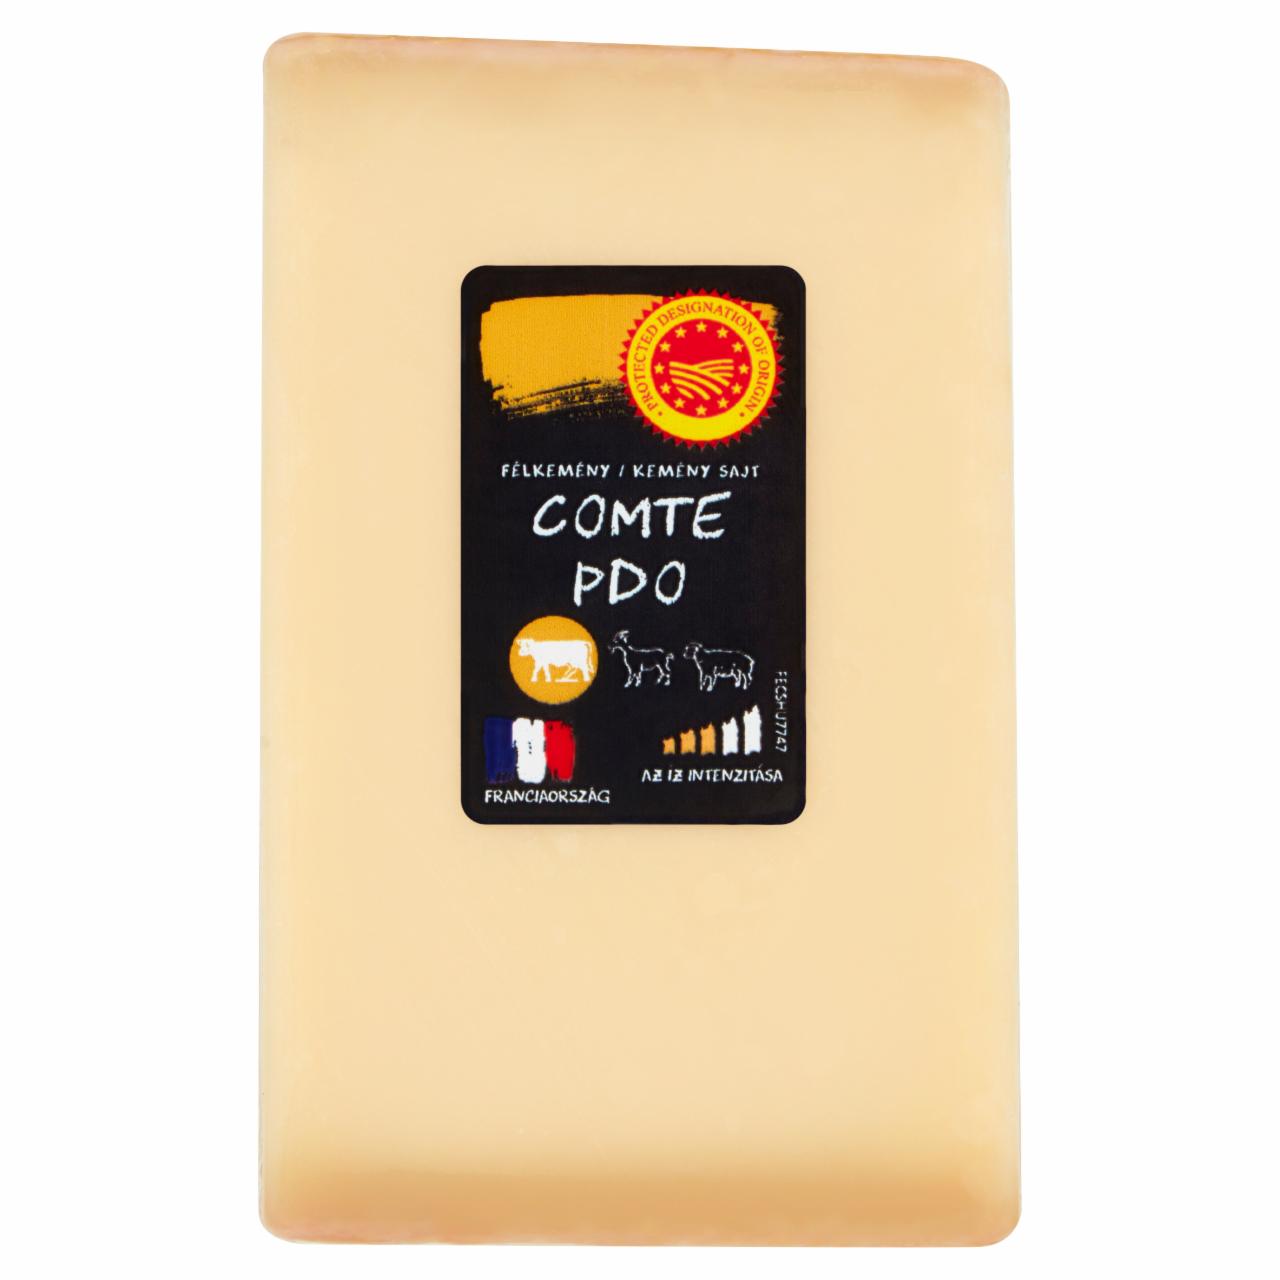 Képek - Comte félkemény/kemény sajt